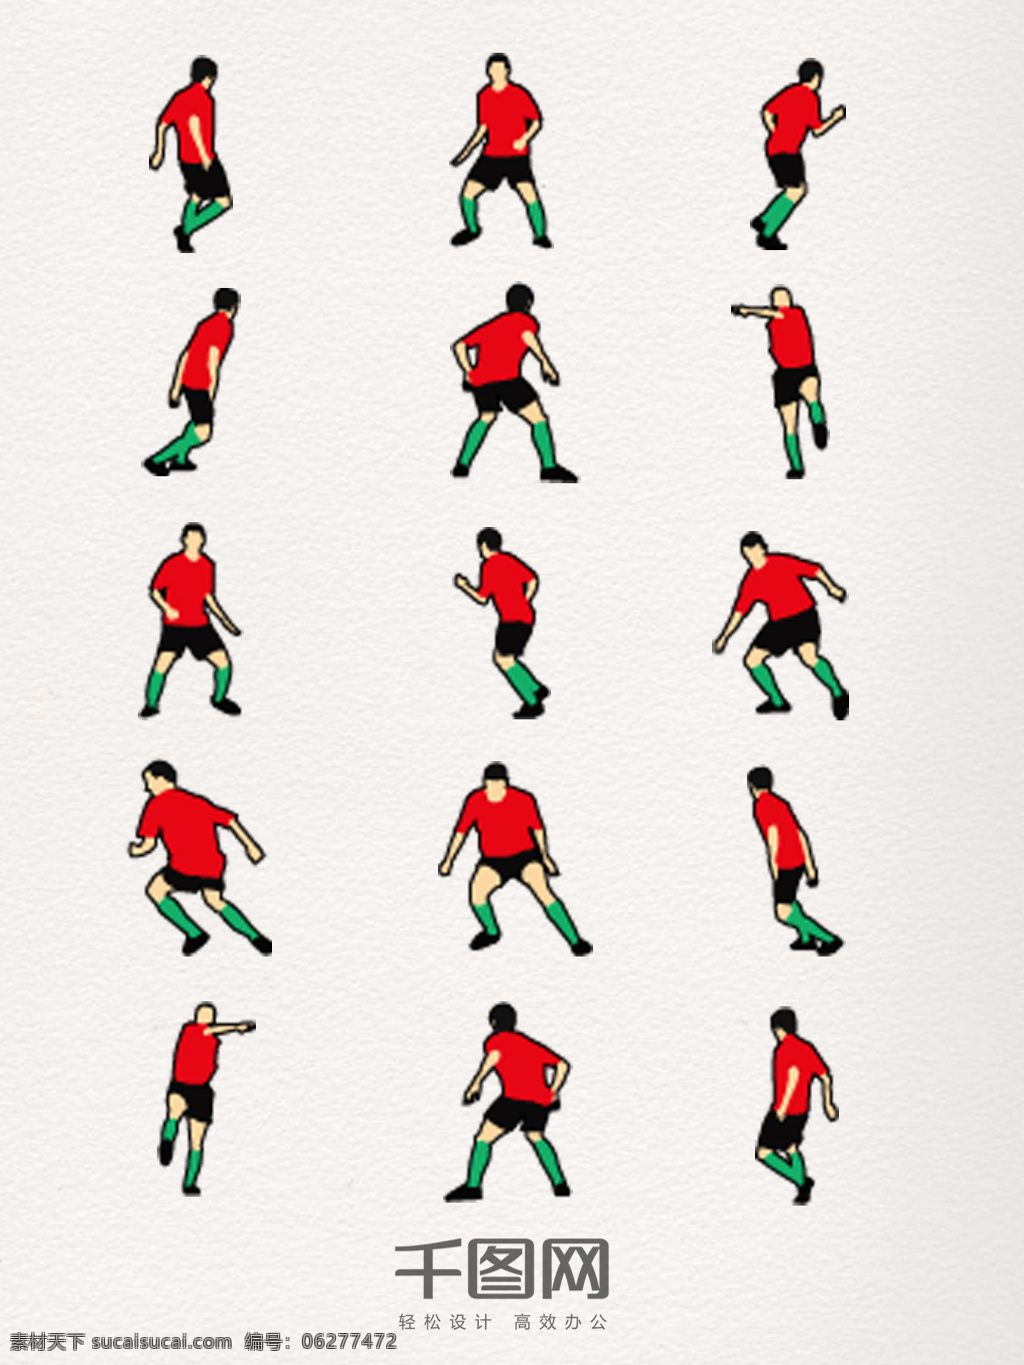 足球 运动员 装饰 元素 踢球 动作 足球运动 世界足球日 彩色 体育运动 红色衣服 中国足球